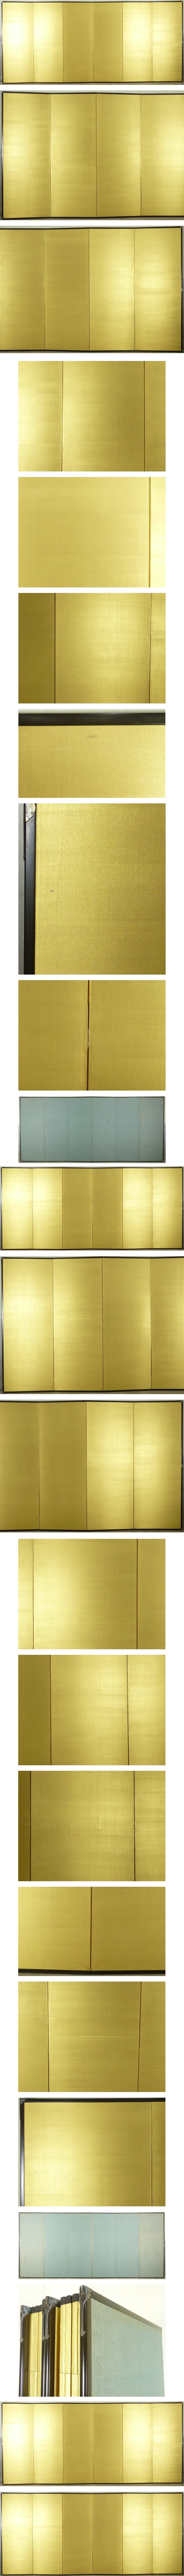 日本直売金屏風 六曲一双 高さ 約173cm 衝立 パーテーション 間仕切り 銀屏風 花鳥、鳥獣